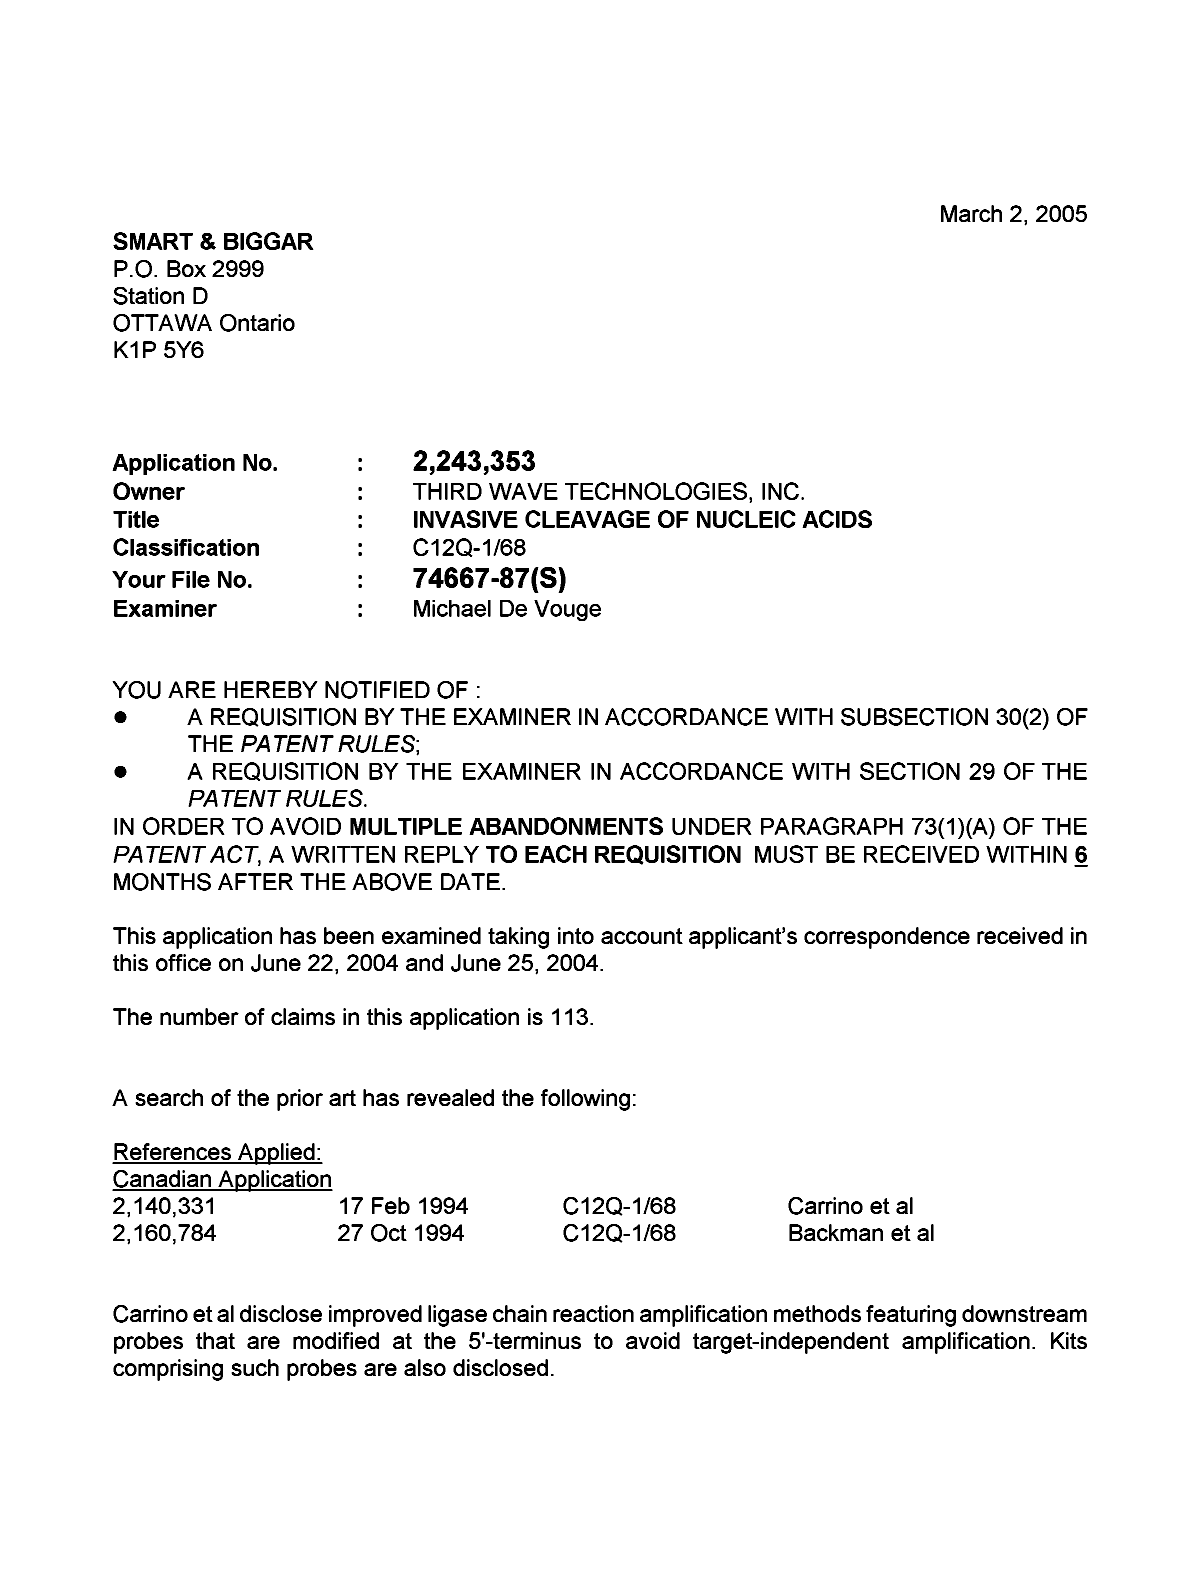 Document de brevet canadien 2243353. Poursuite-Amendment 20050302. Image 1 de 4